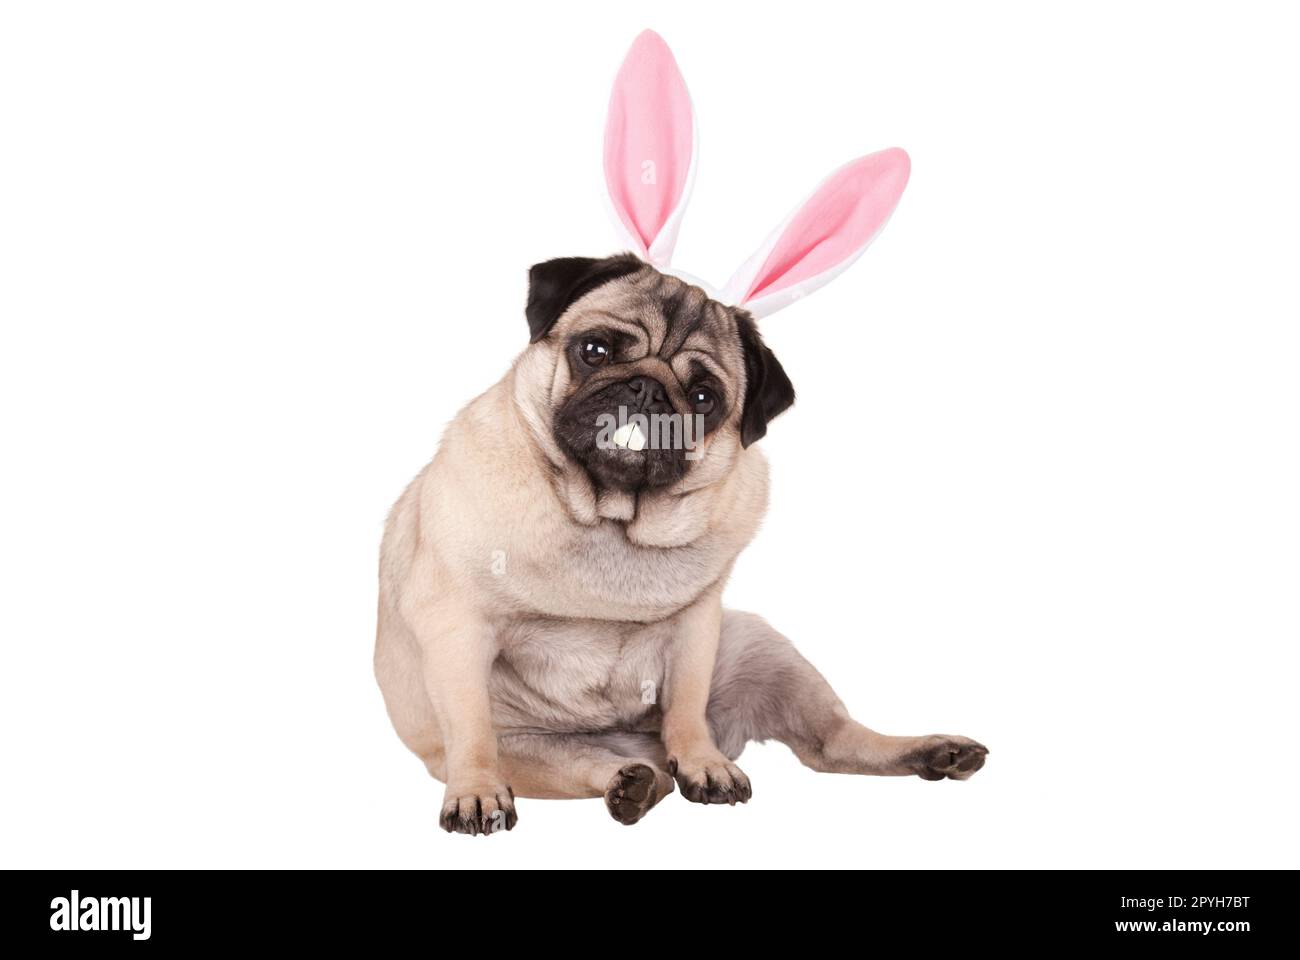 Allerliebst niedliche Mops Welpen Hund sitzend mit Osterhasen Ohren und Zähne, auf weißem Hintergrund Stockfoto